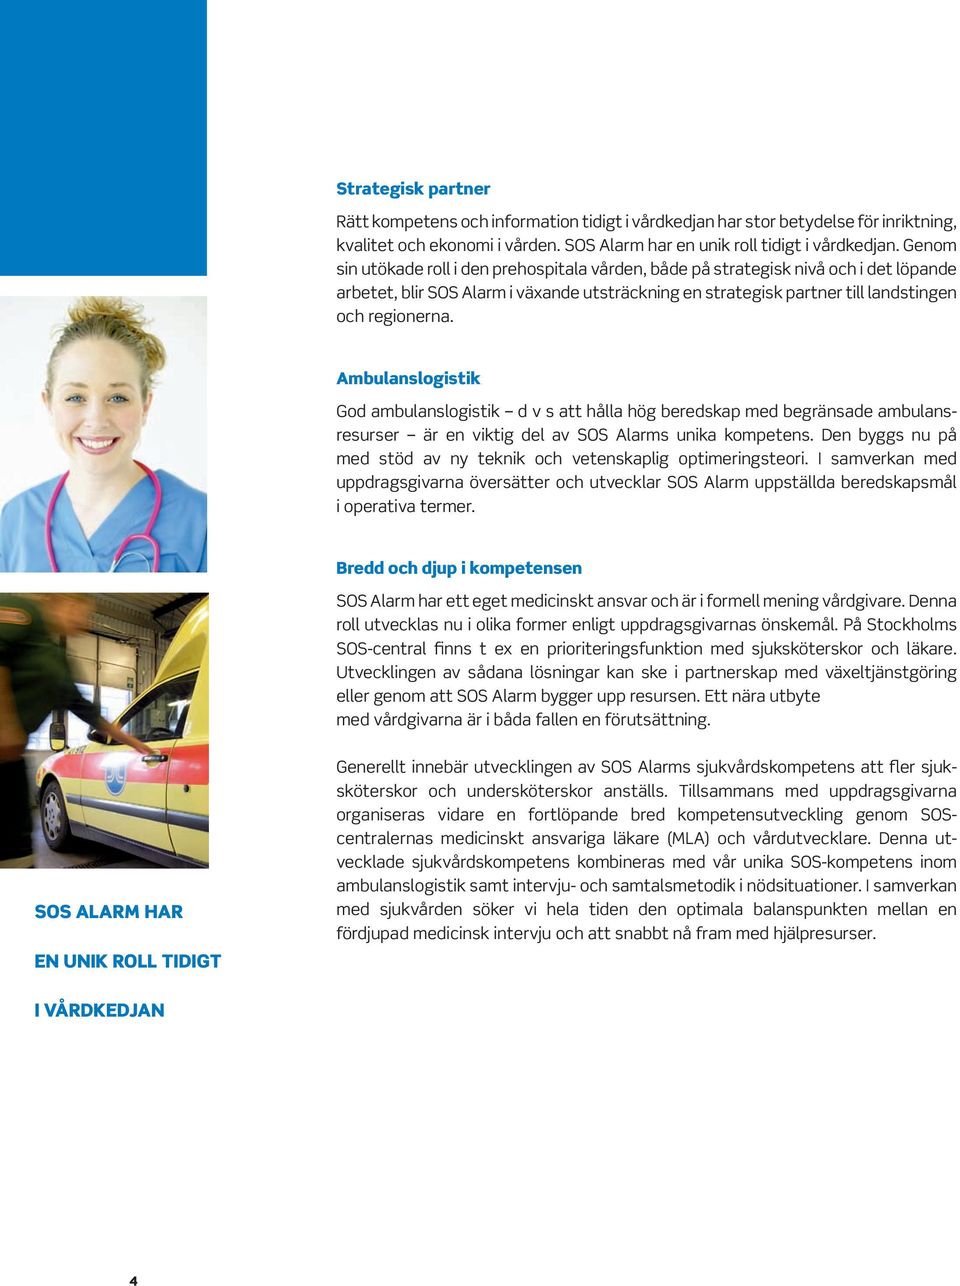 Ambulanslogistik God ambulanslogistik d v s att hålla hög beredskap med begränsade ambulansresurser är en viktig del av SOS Alarms unika kompetens.